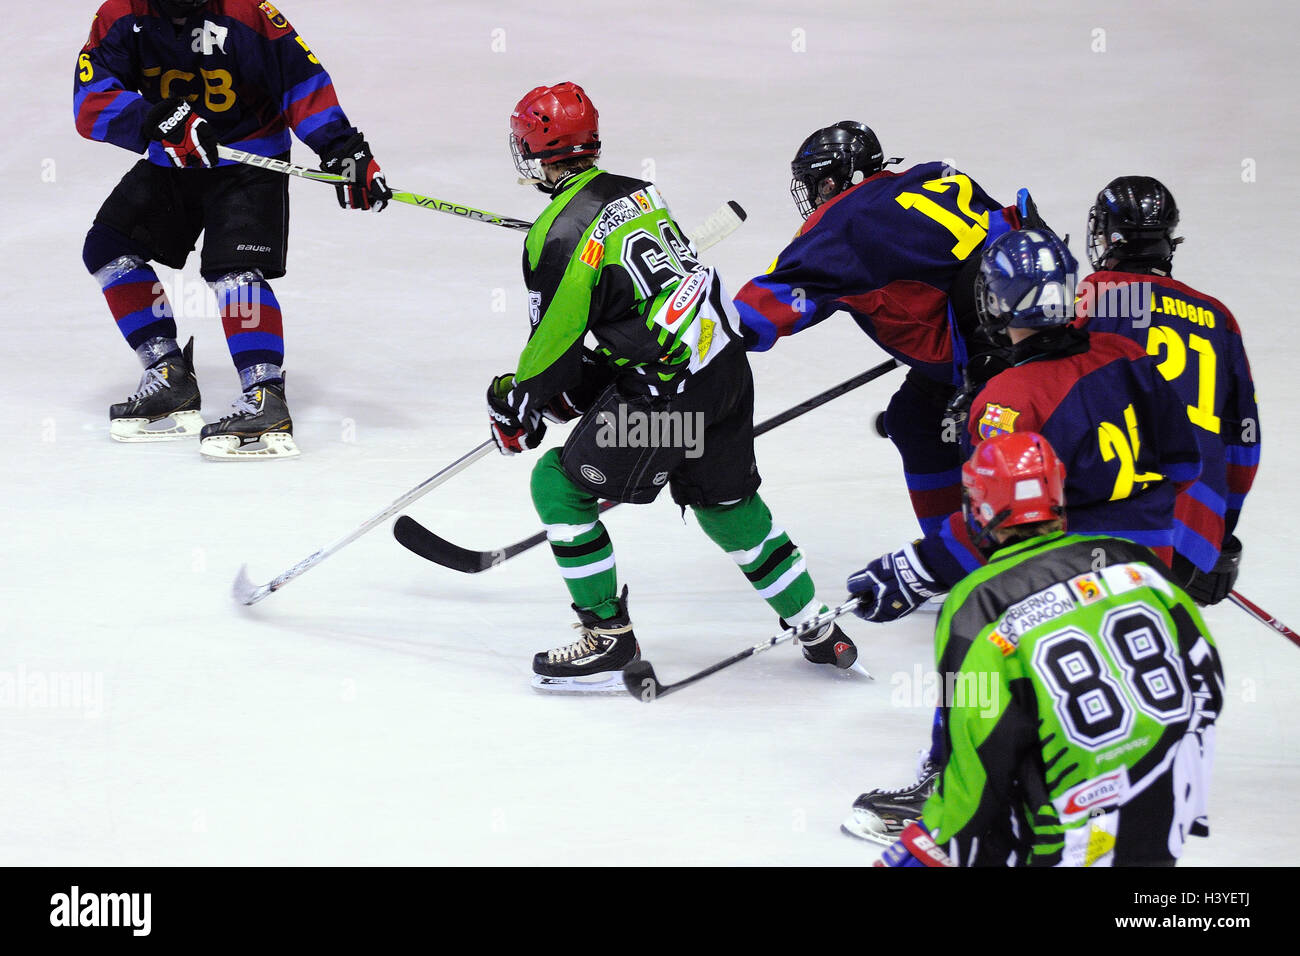 Barcellona - 11 Maggio: i giocatori in azione nella Finale di Hockey su ghiaccio della Copa del Rey (Coppa di Spagna). Foto Stock